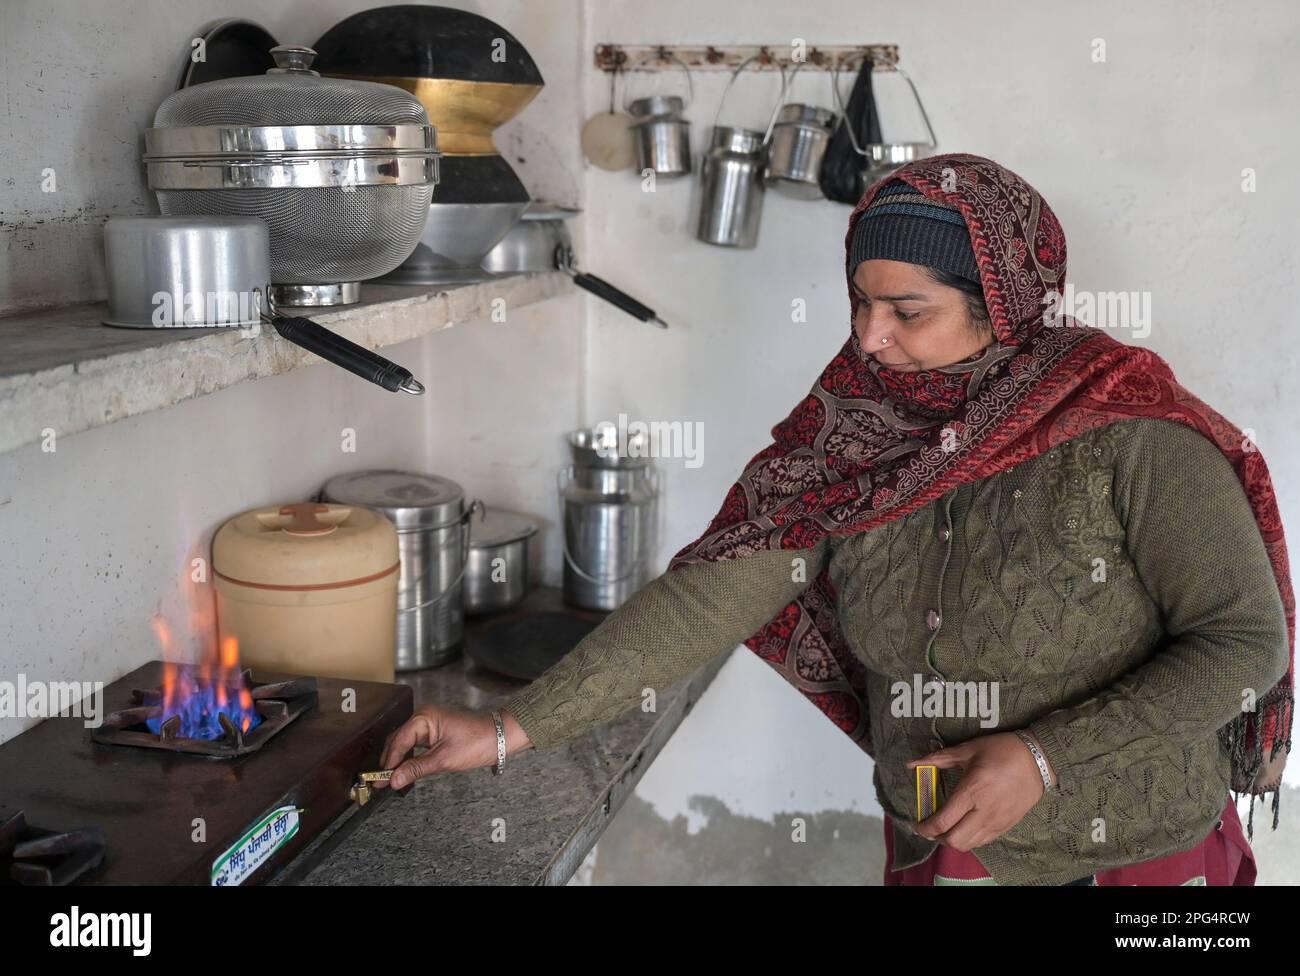 INDIEN, Punjab, Homestead mit kleiner Biogasanlage zum Kochen, Biogasofen in der Küche / INDIEN, Punjab, Bauernhof mit kleiner Biogasanlage , das Gas wird in der Küche zum kochen genutzt Stockfoto